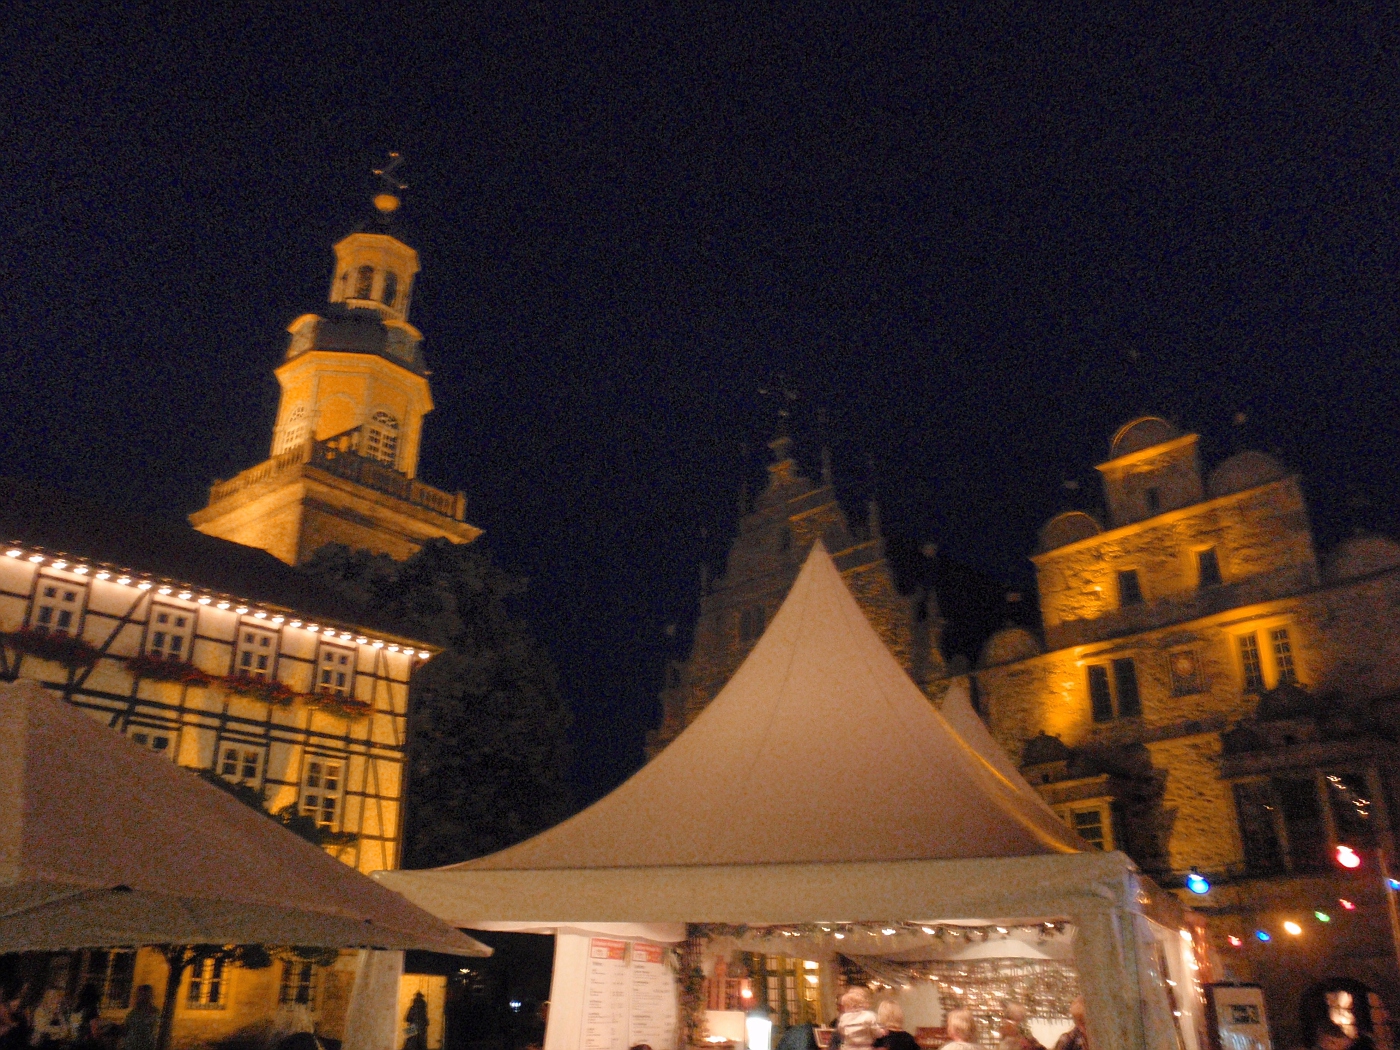 Marktplatz in Rinteln